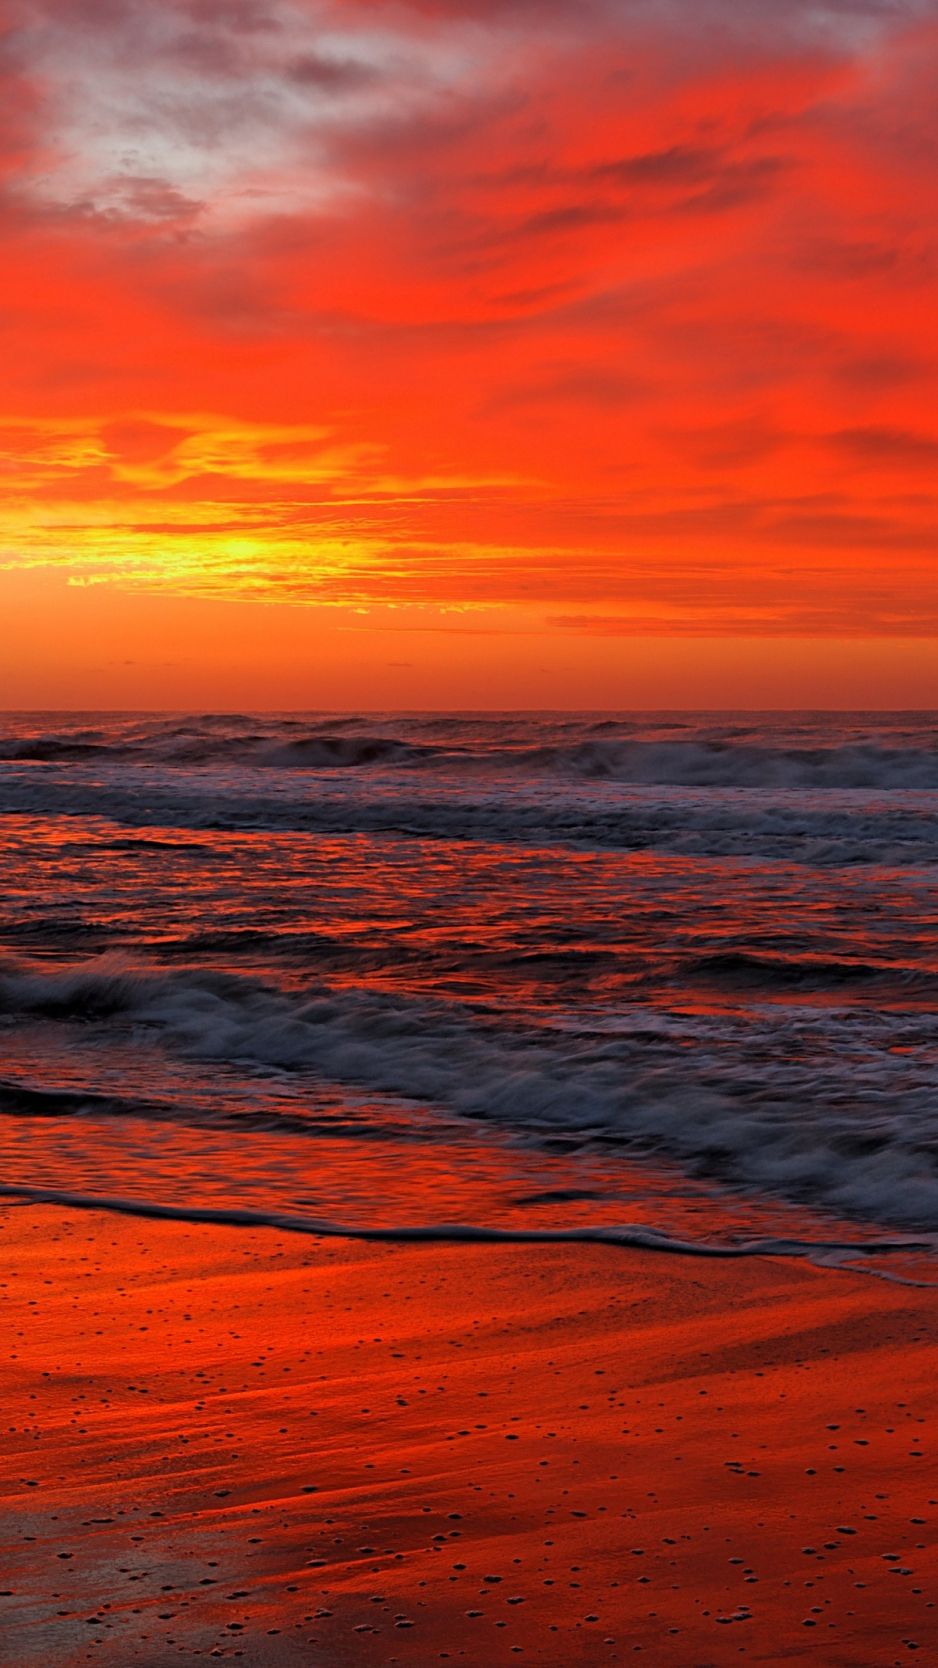 Iphone Wallpaper 4k Beach Sunset 1125x2436 Beautiful Beach Sunset